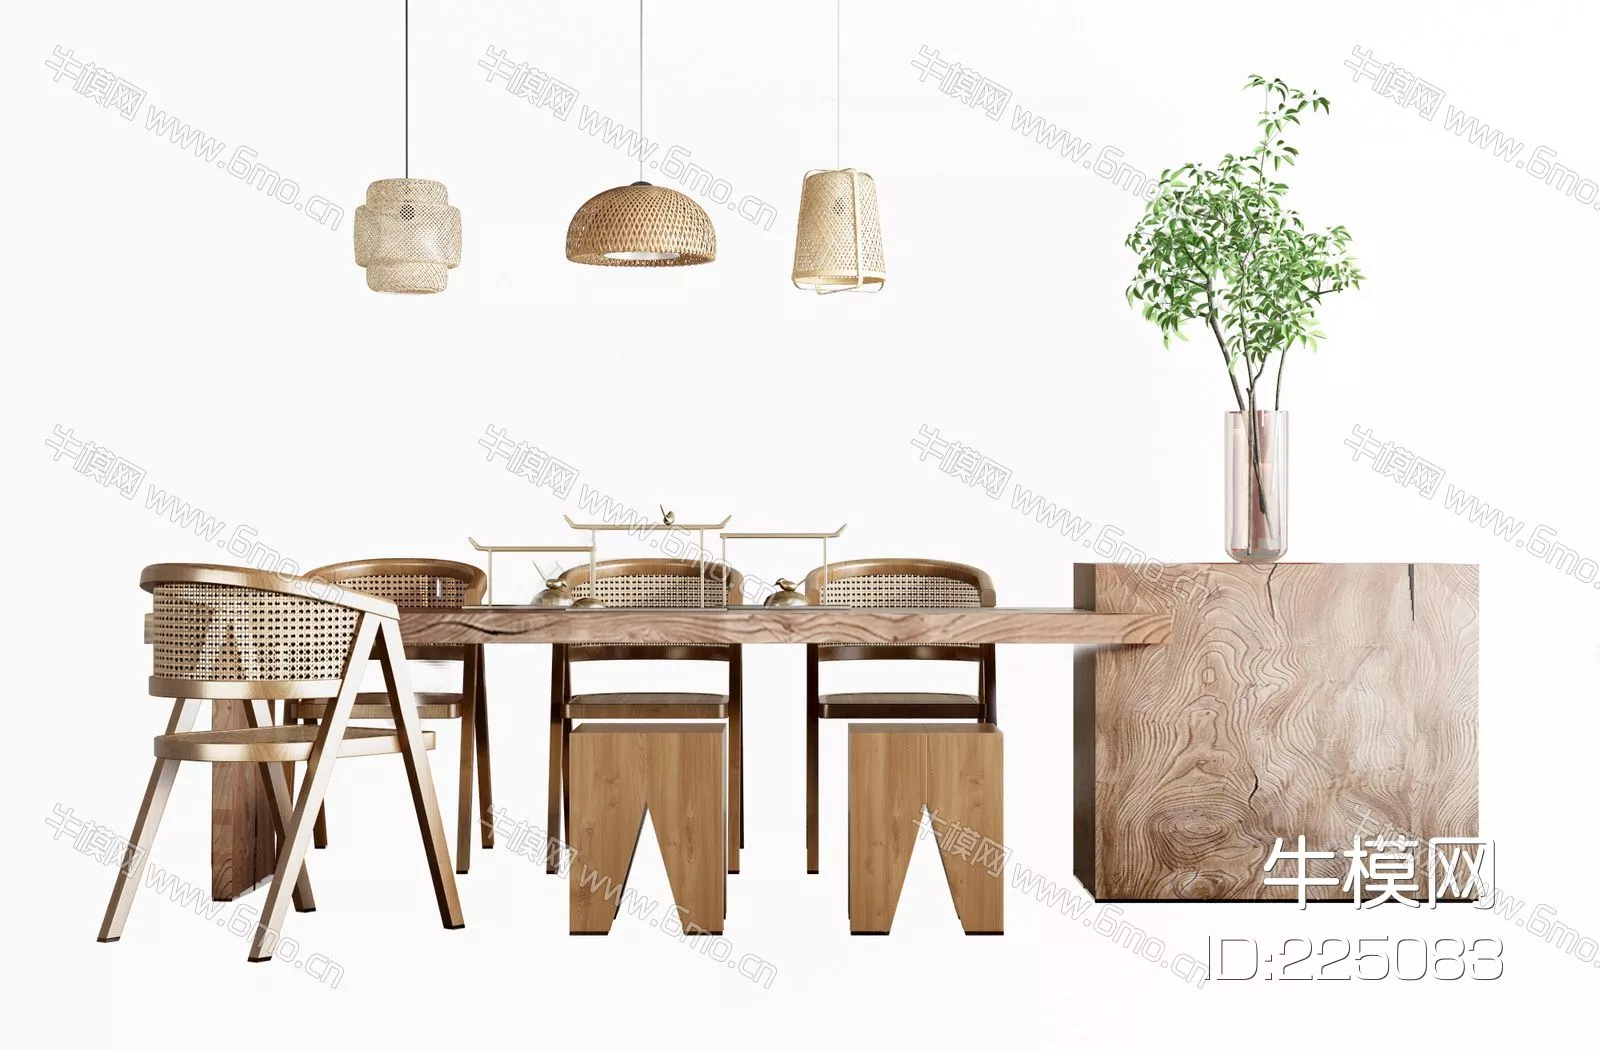 WABI SABI DINING TABLE SET - SKETCHUP 3D MODEL - ENSCAPE - 225083